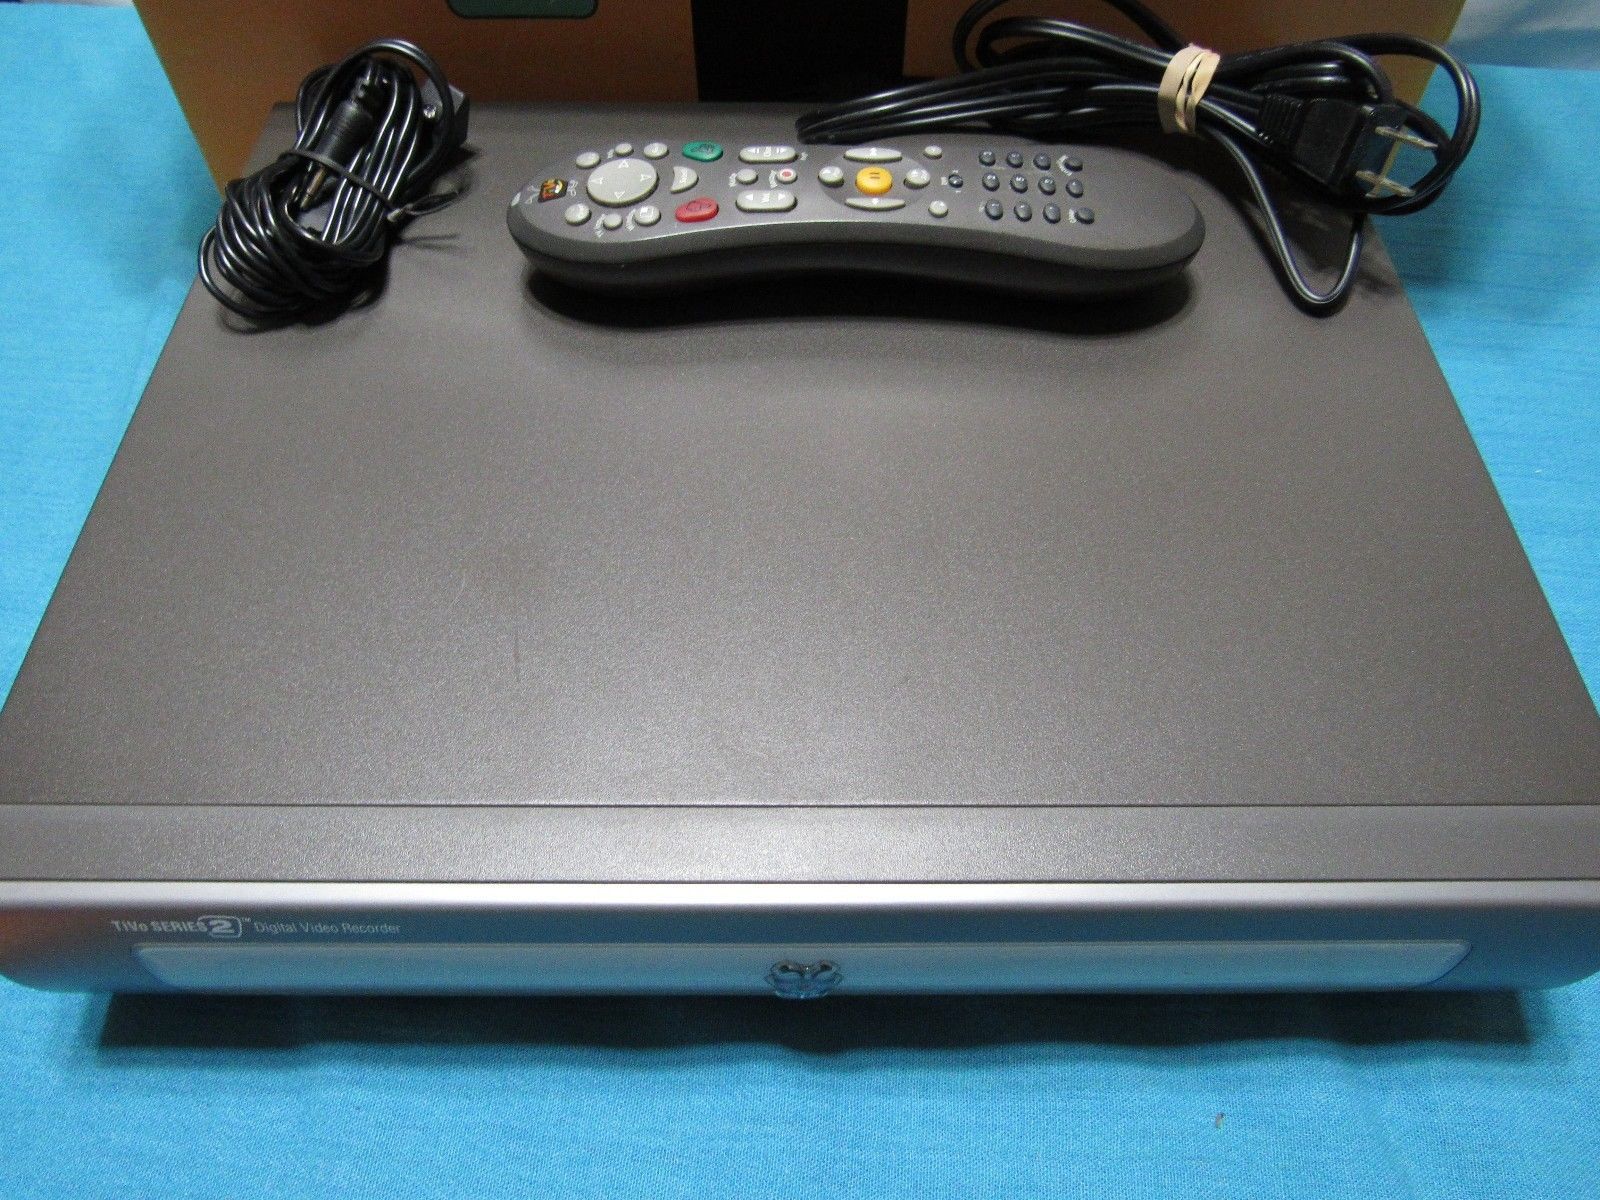 TiVo Series 2 DVR TCD540080 w/ Remote  Power Tested - $44.67